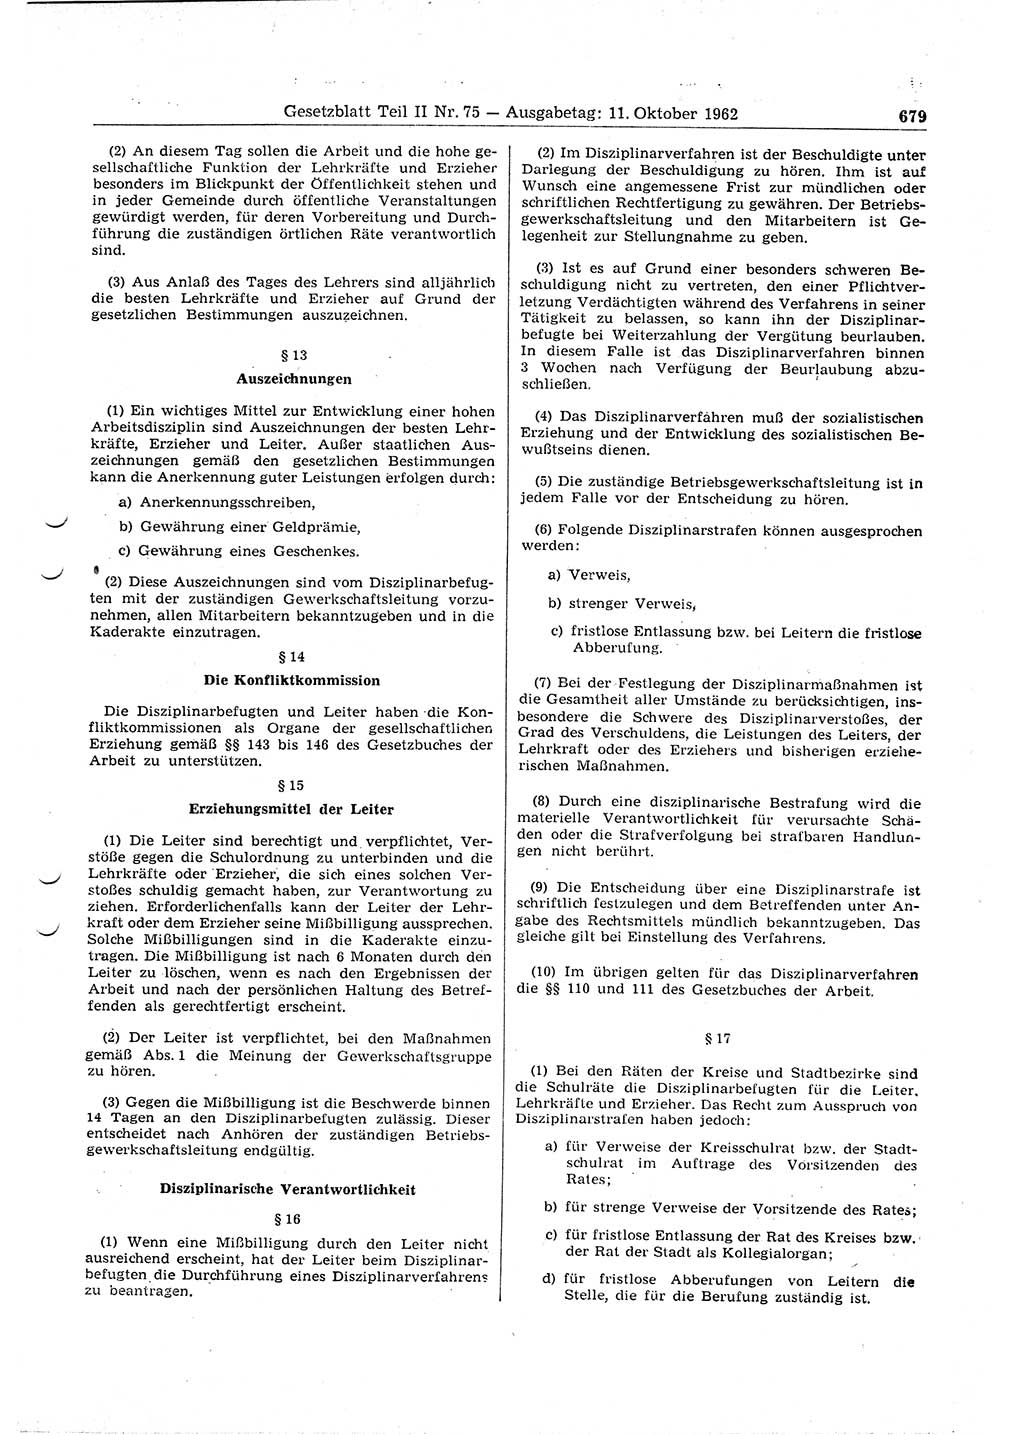 Gesetzblatt (GBl.) der Deutschen Demokratischen Republik (DDR) Teil ⅠⅠ 1962, Seite 679 (GBl. DDR ⅠⅠ 1962, S. 679)